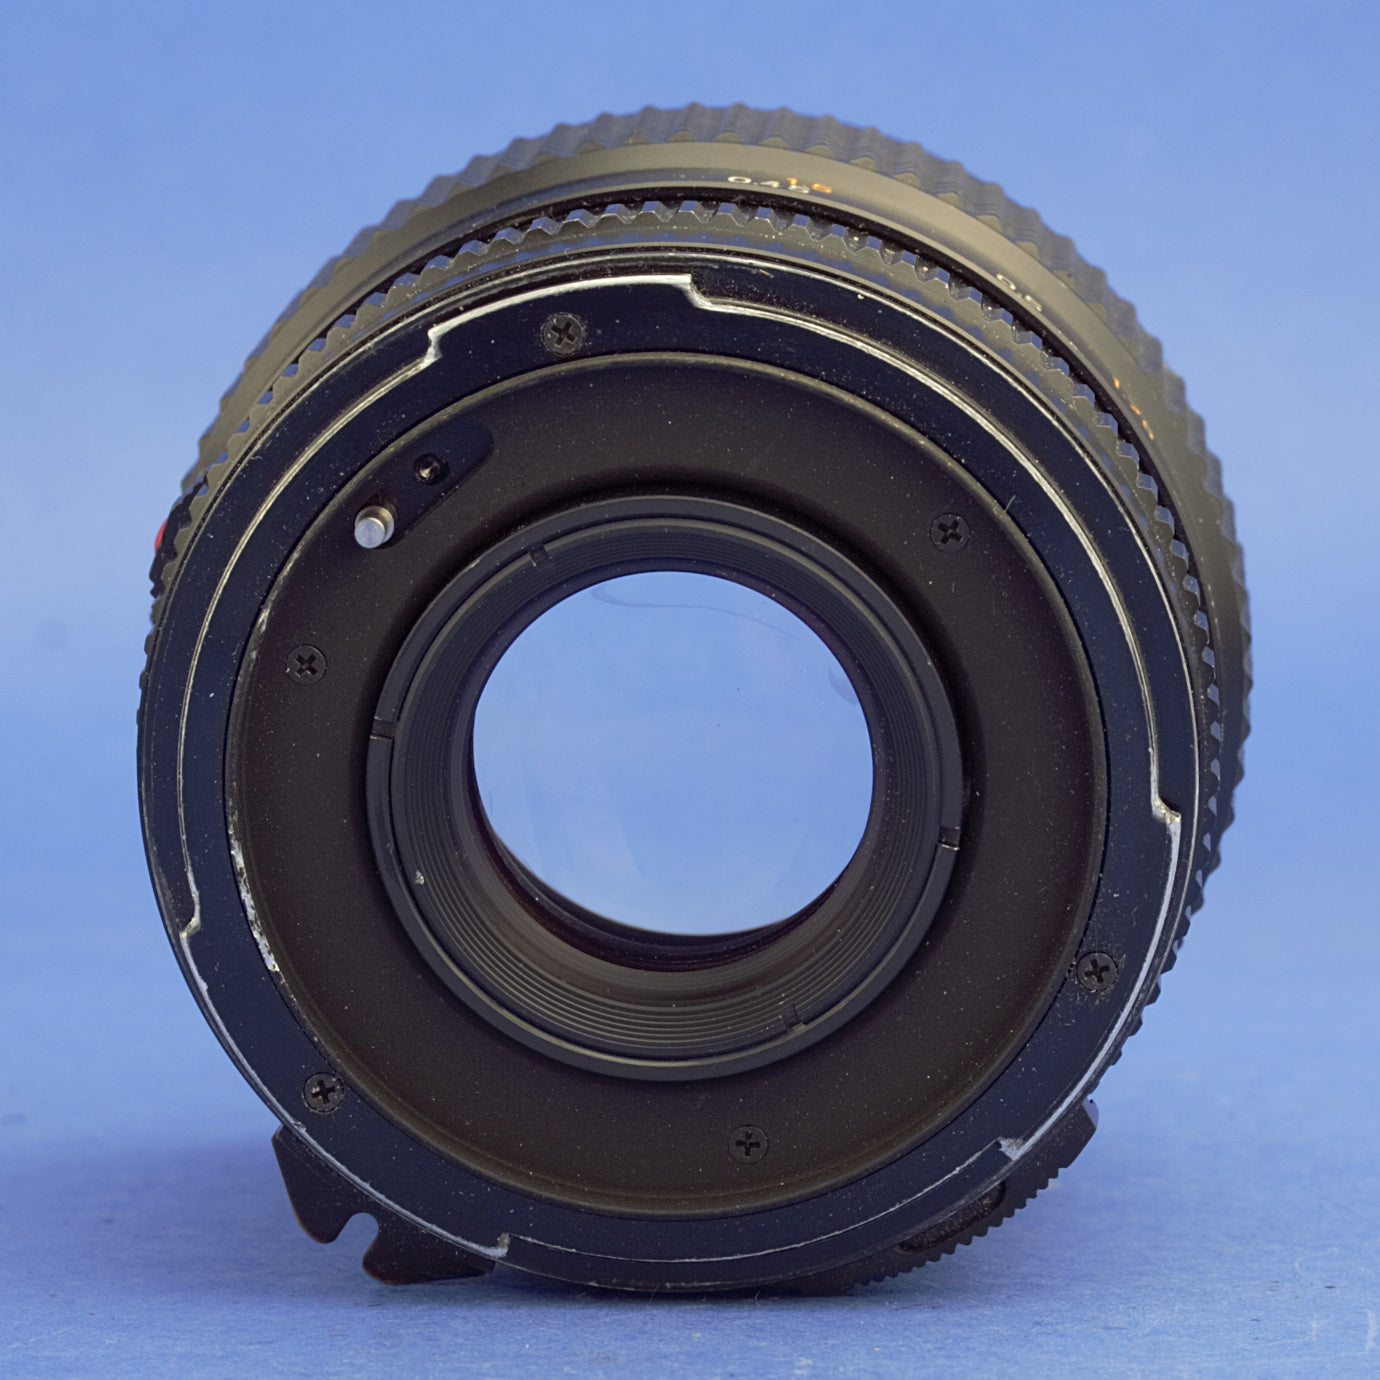 Mamiya 645 45mm 2.8 S Lens